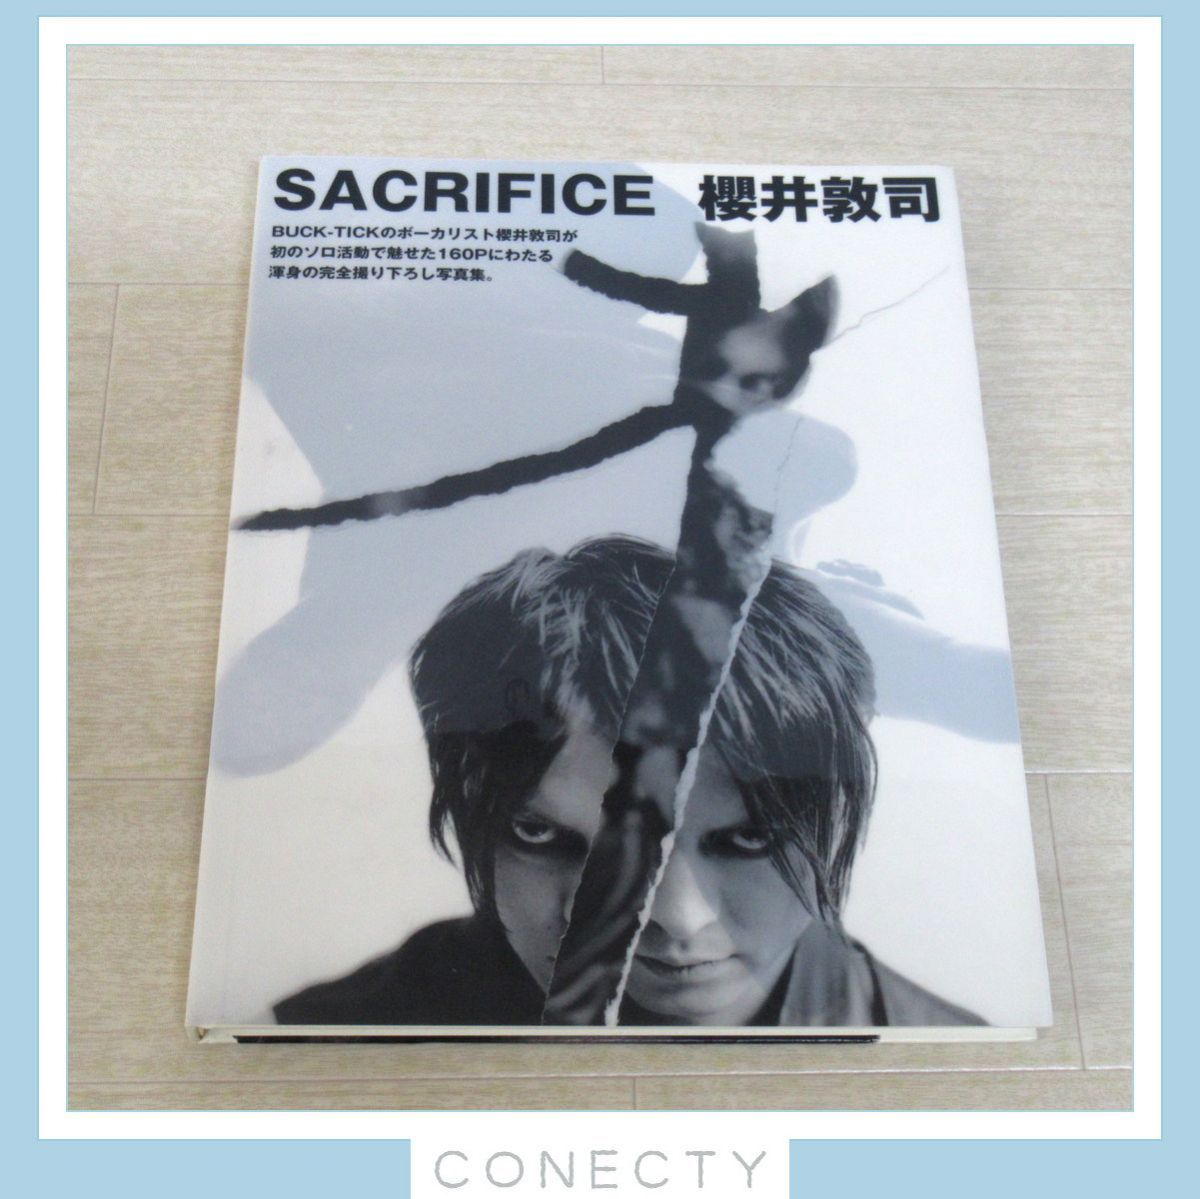 櫻井敦司 写真集「SACRIFICE」BUCK-TICK バクチク【J4【SP